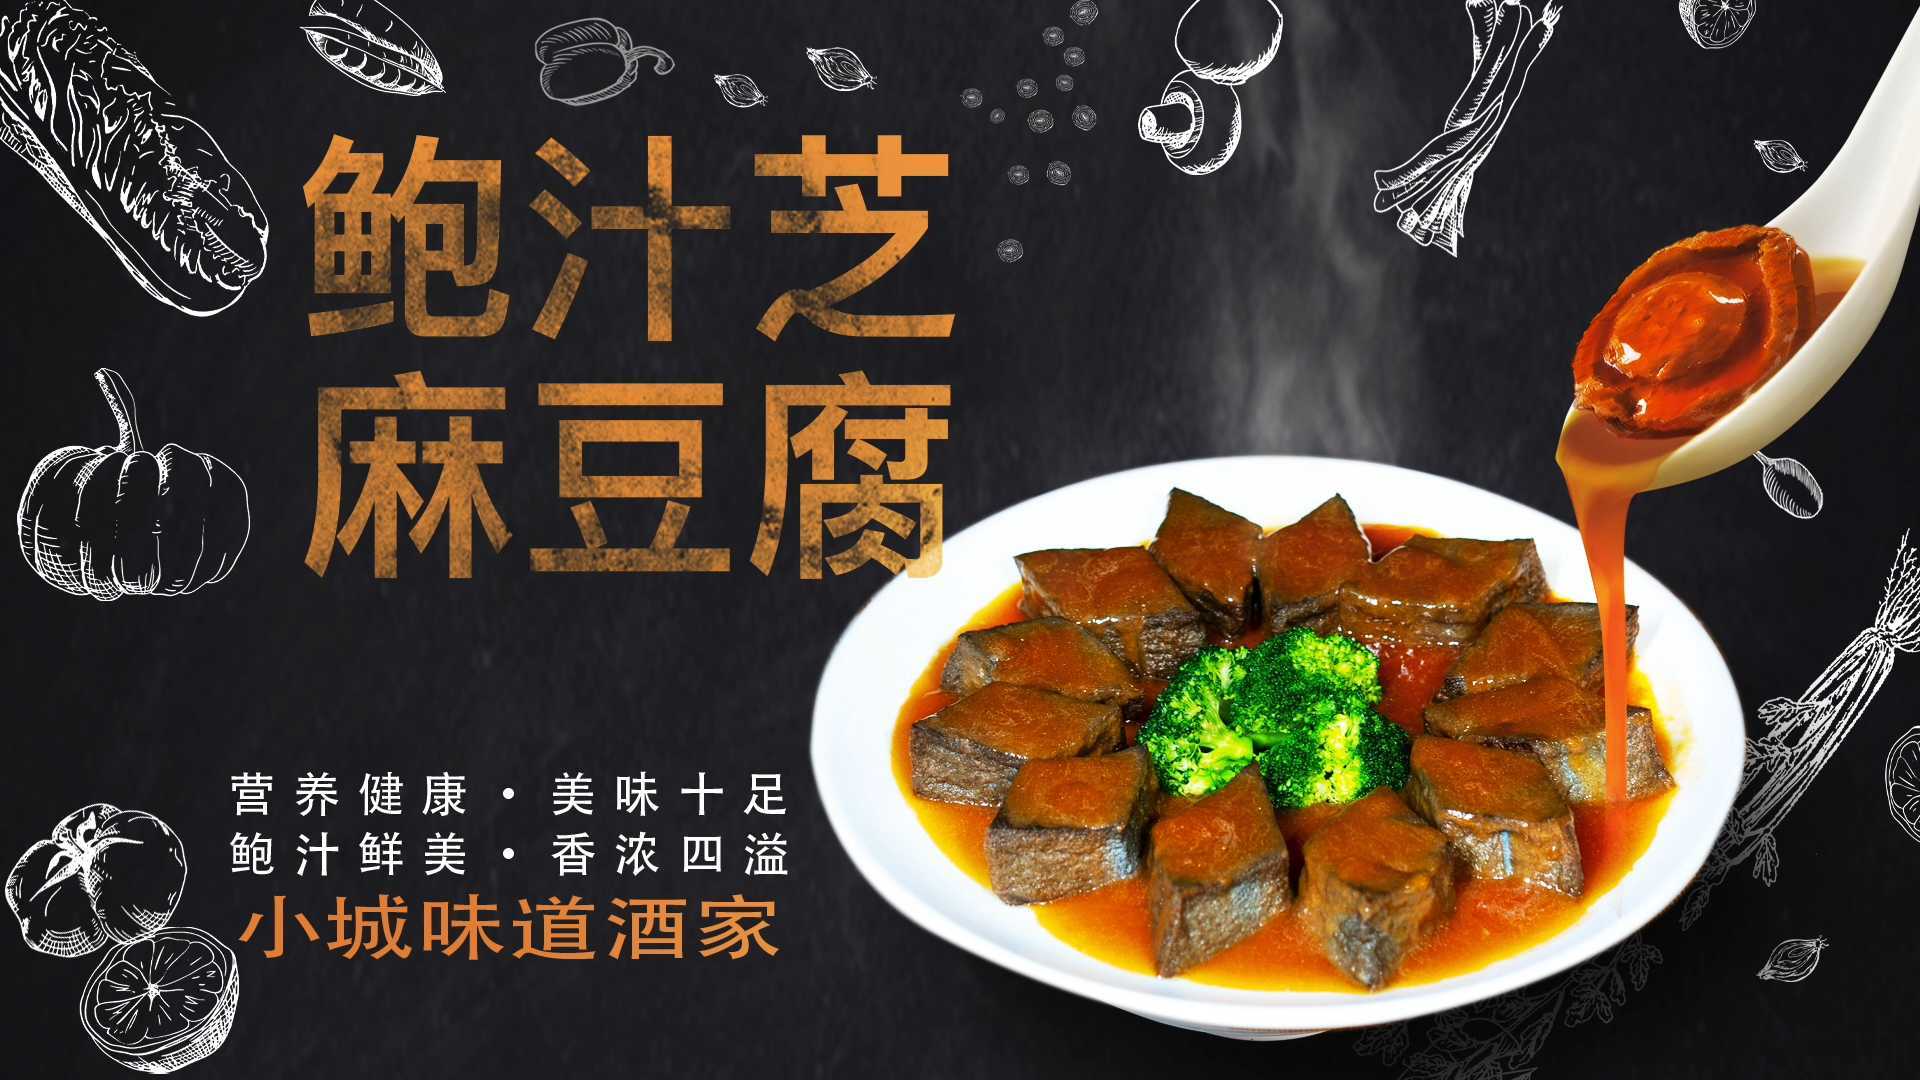 菜品广告-黑芝麻鲍汁豆腐